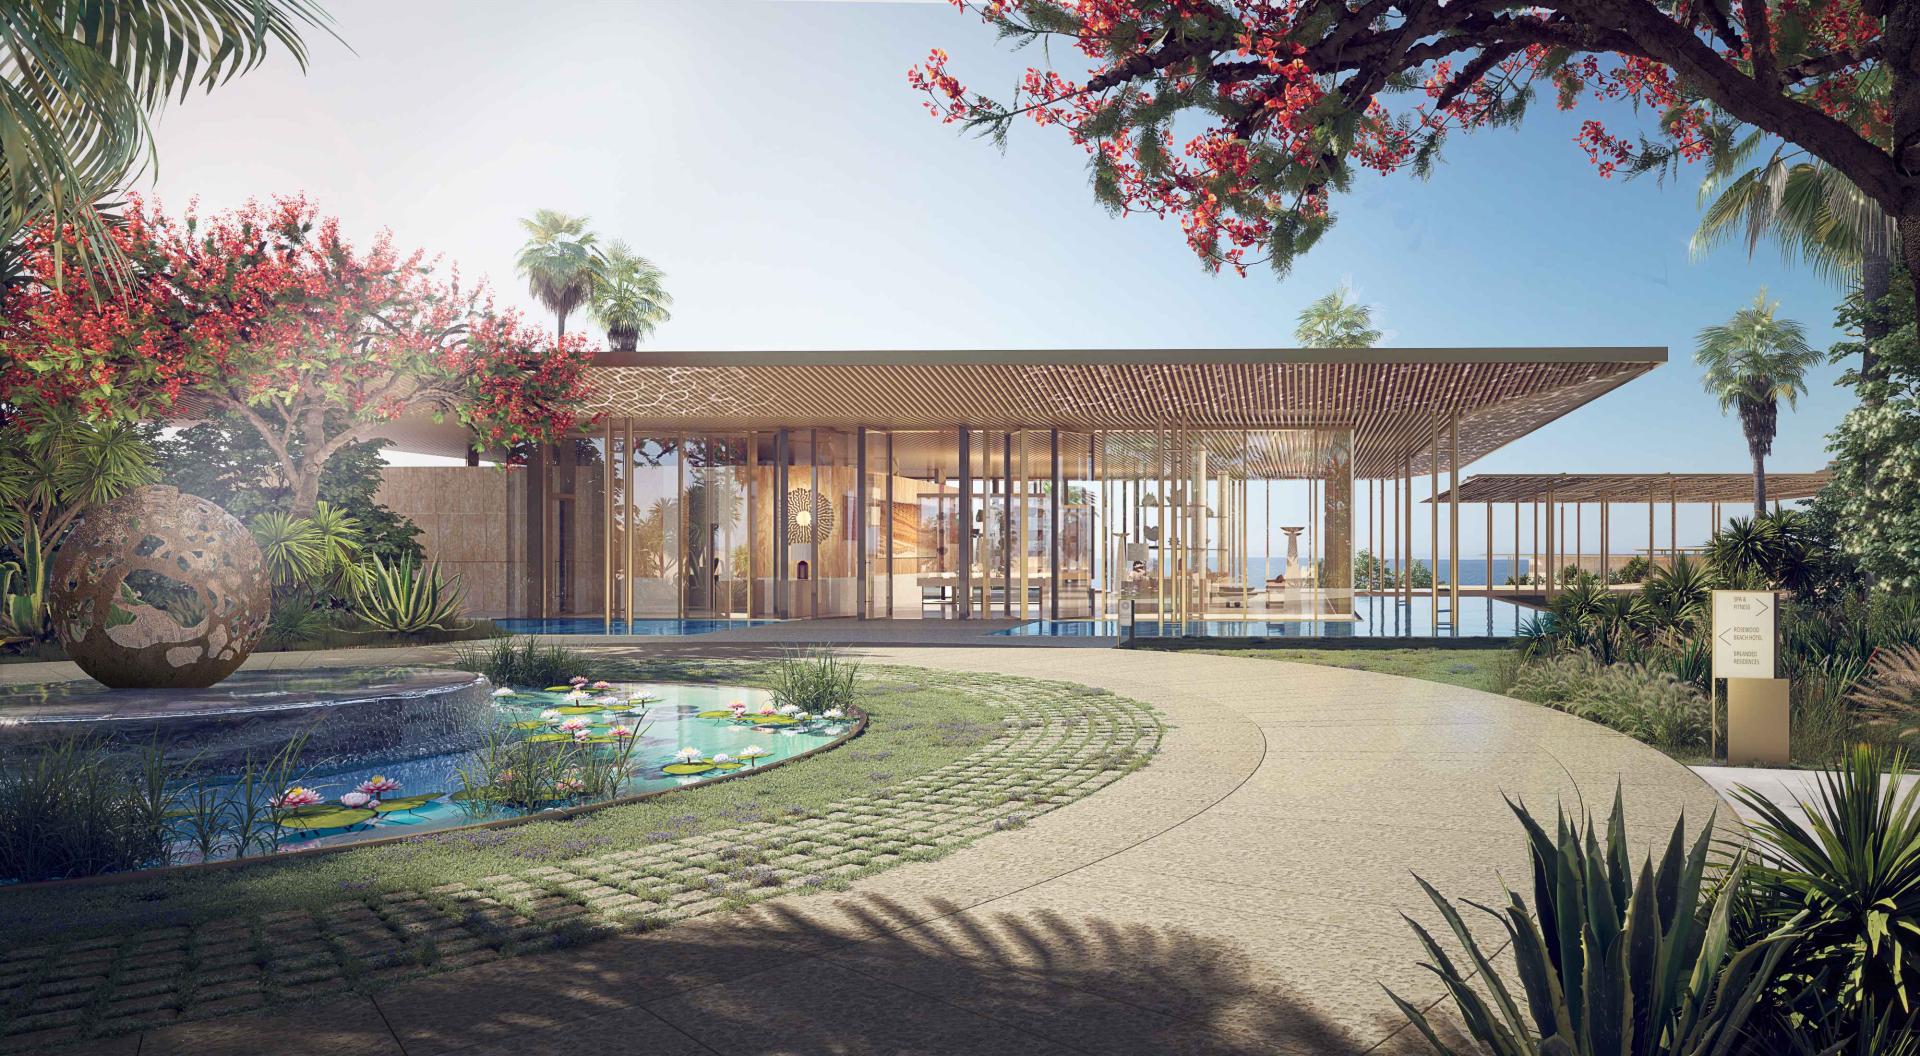  A rendering of AMAALA Rodewood Resort